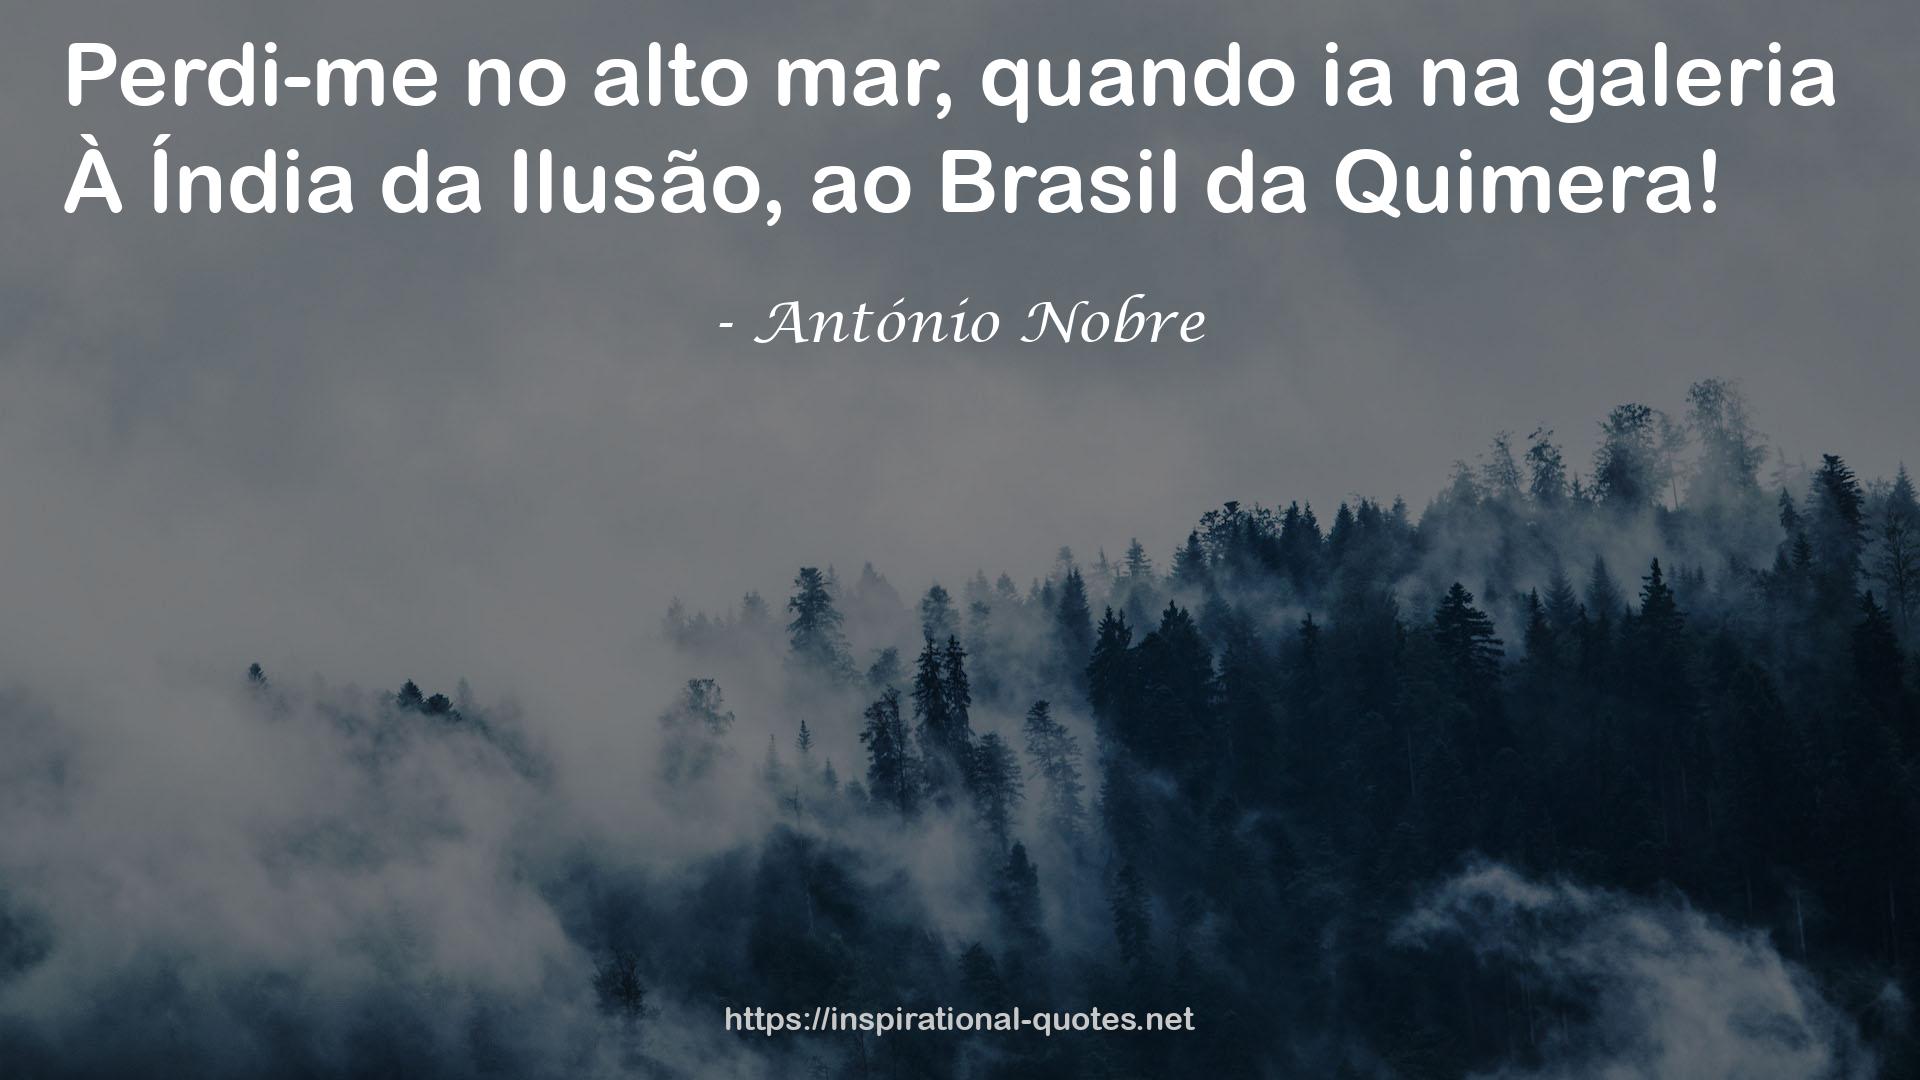 António Nobre QUOTES